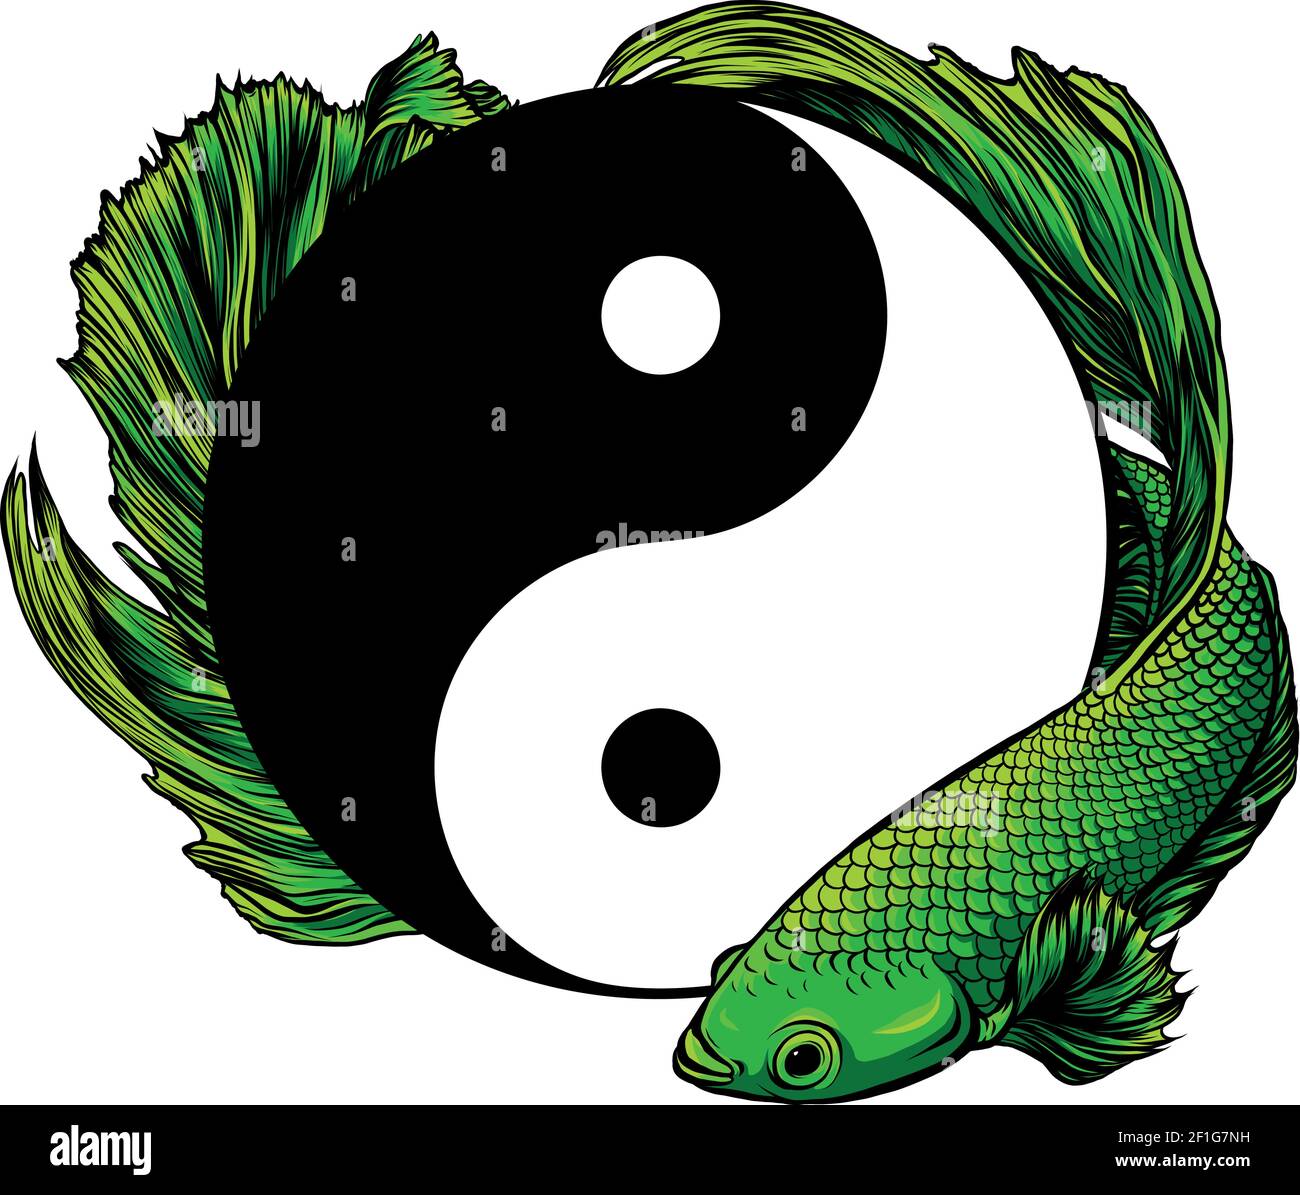 Yin Yang betta splendens fish vector illustration art Stock Vector